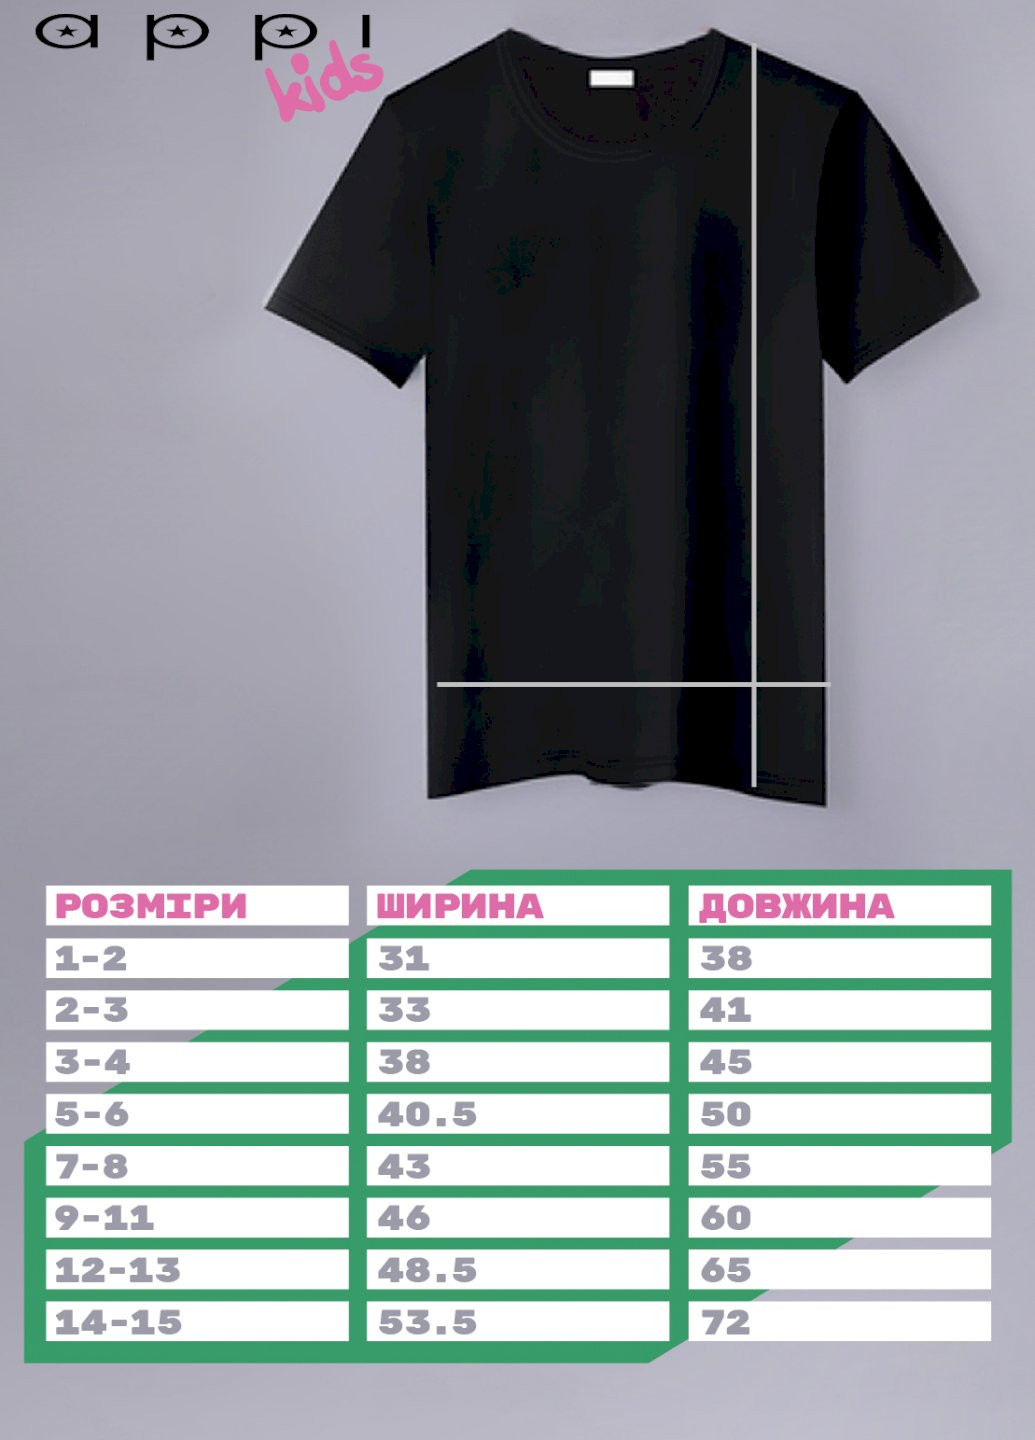 Черная демисезонная футболка детская черная патриотическая "назар est. ukraine" YAPPI